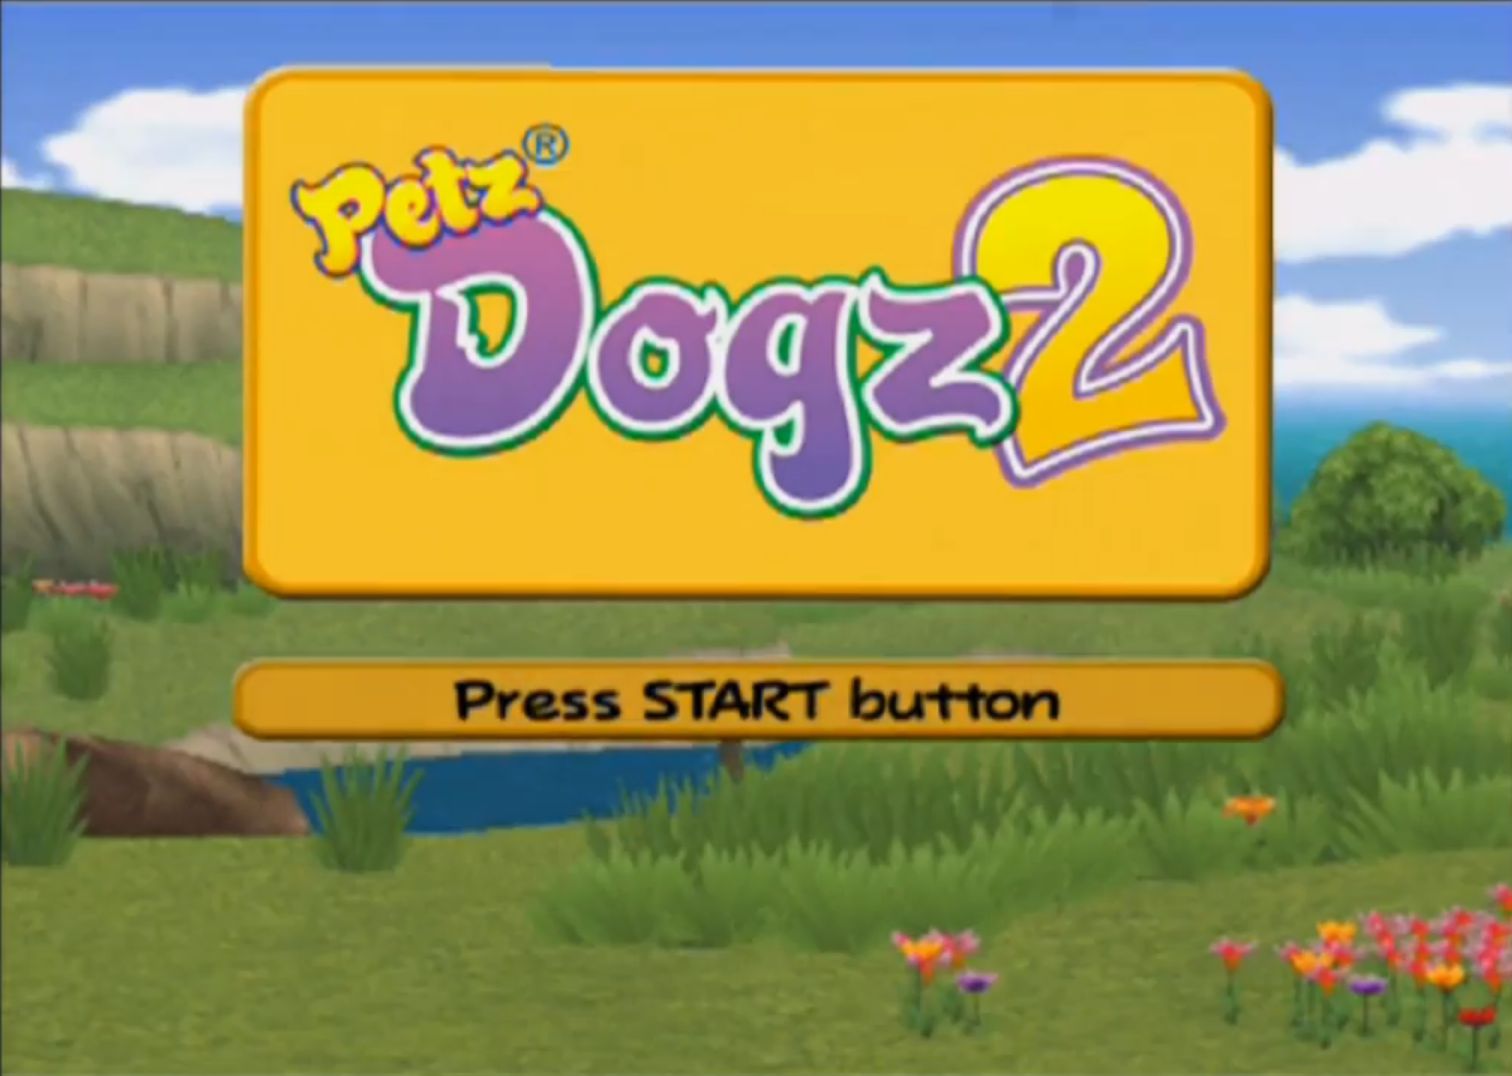 petz dogz 2 mini games